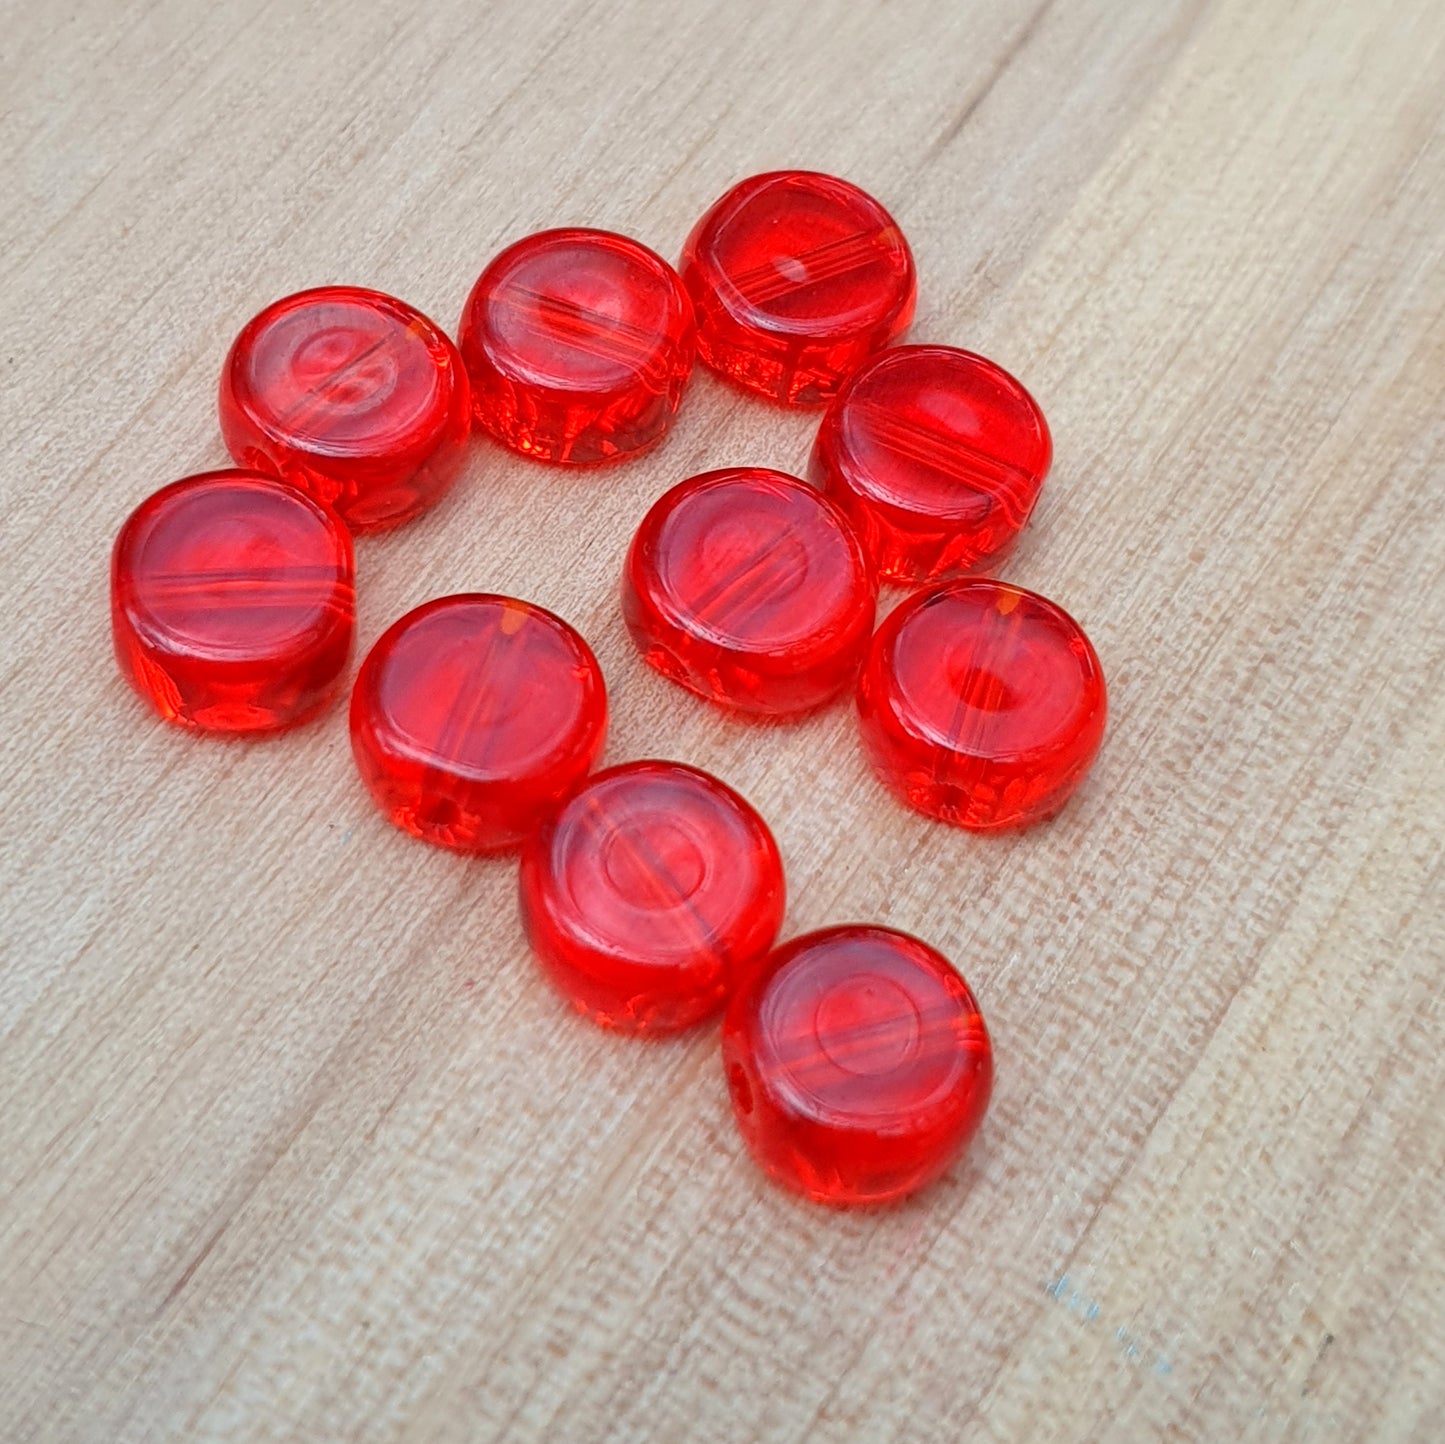 10 runde Glasperlen, Münze, transparent, 8mm Durchmesser, rot